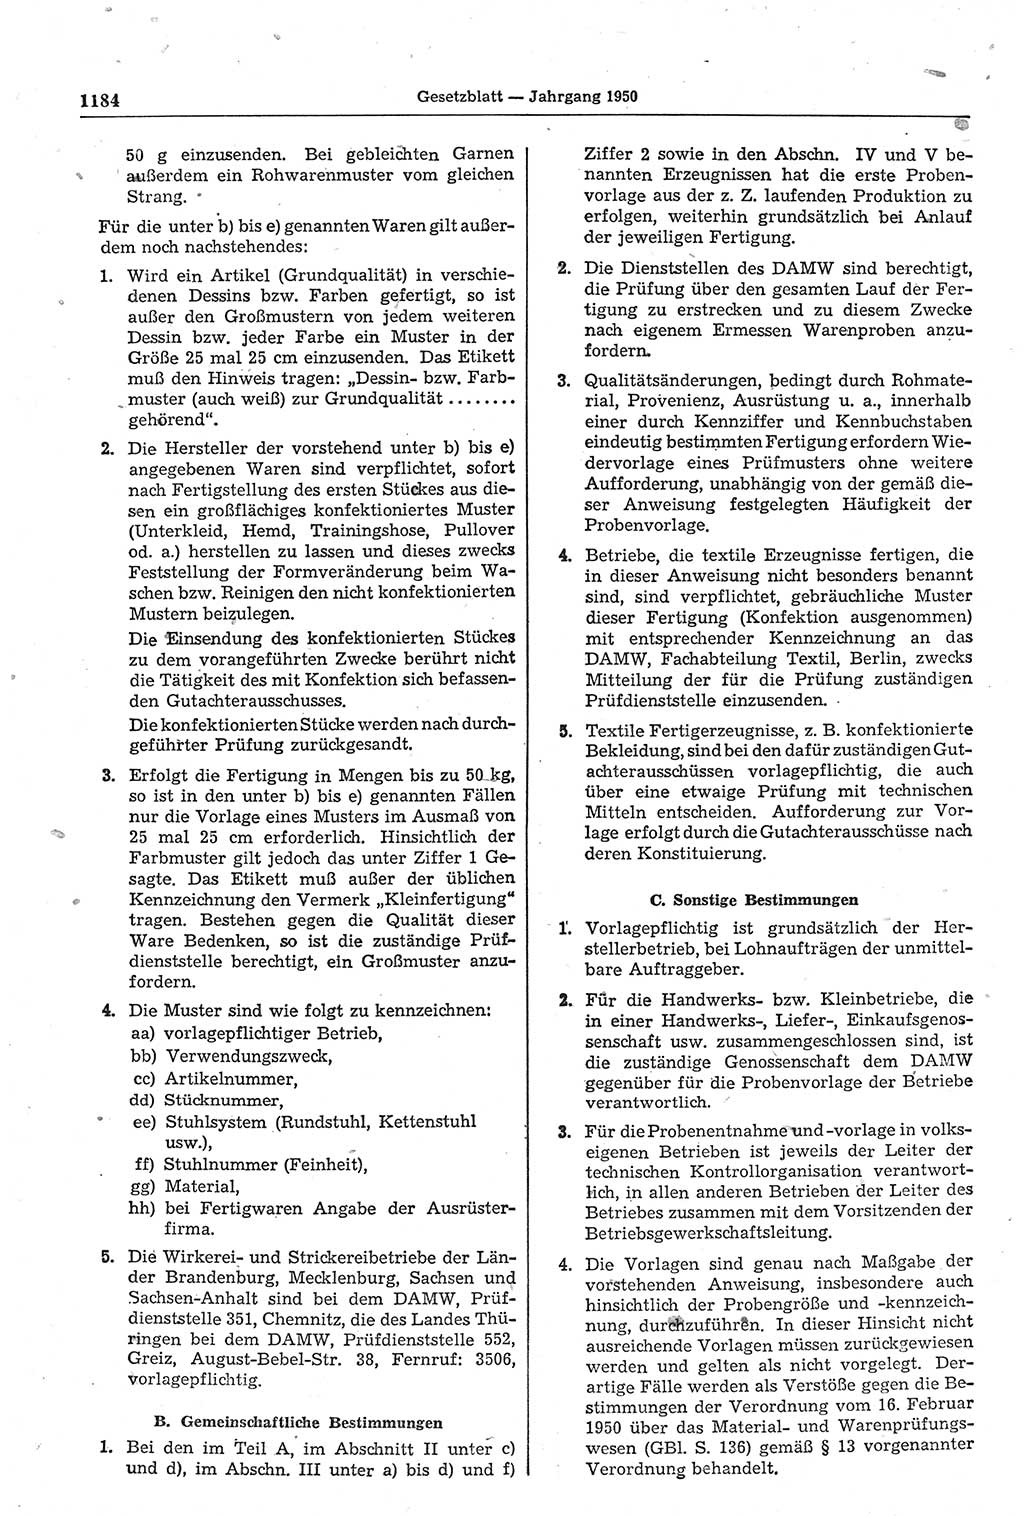 Gesetzblatt (GBl.) der Deutschen Demokratischen Republik (DDR) 1950, Seite 1184 (GBl. DDR 1950, S. 1184)